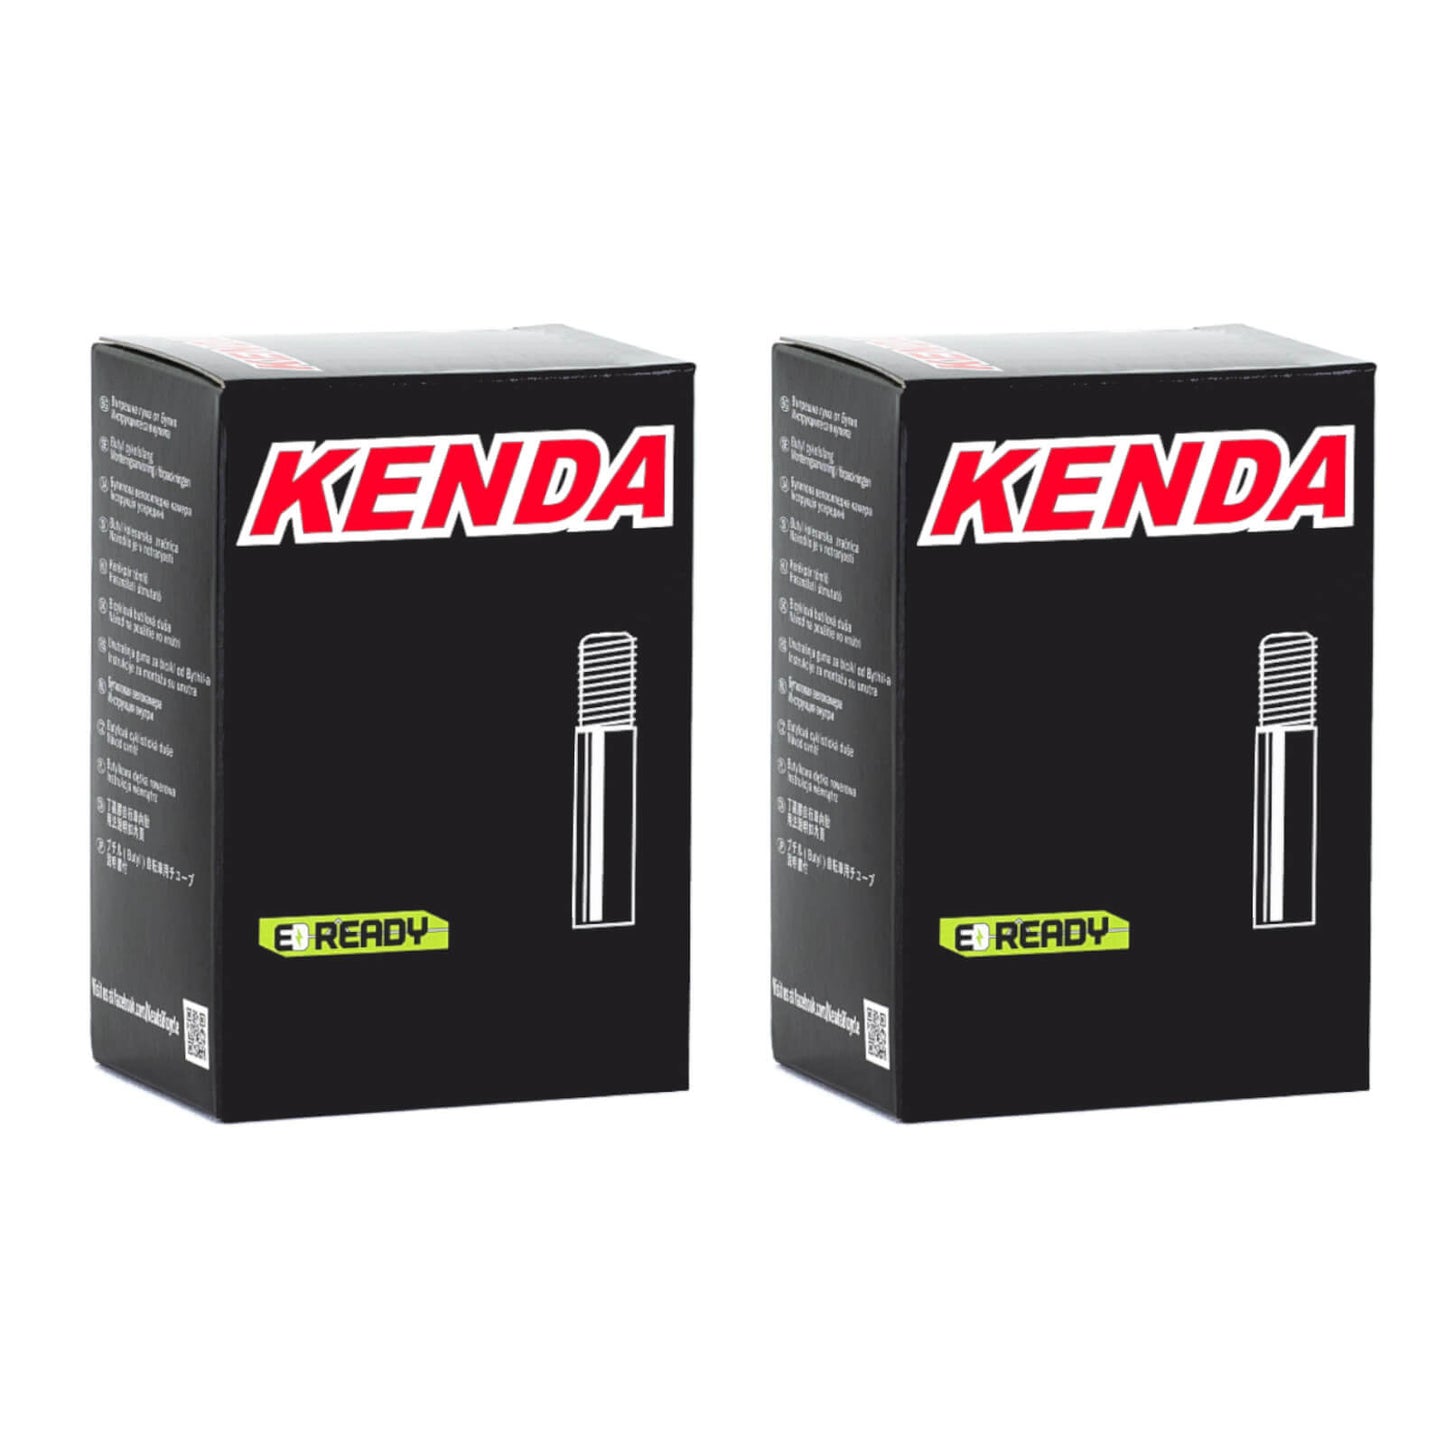 Kenda 24x2.75-3.0" 24 Inch Schrader Valve Bike Inner Tube Pack of 2